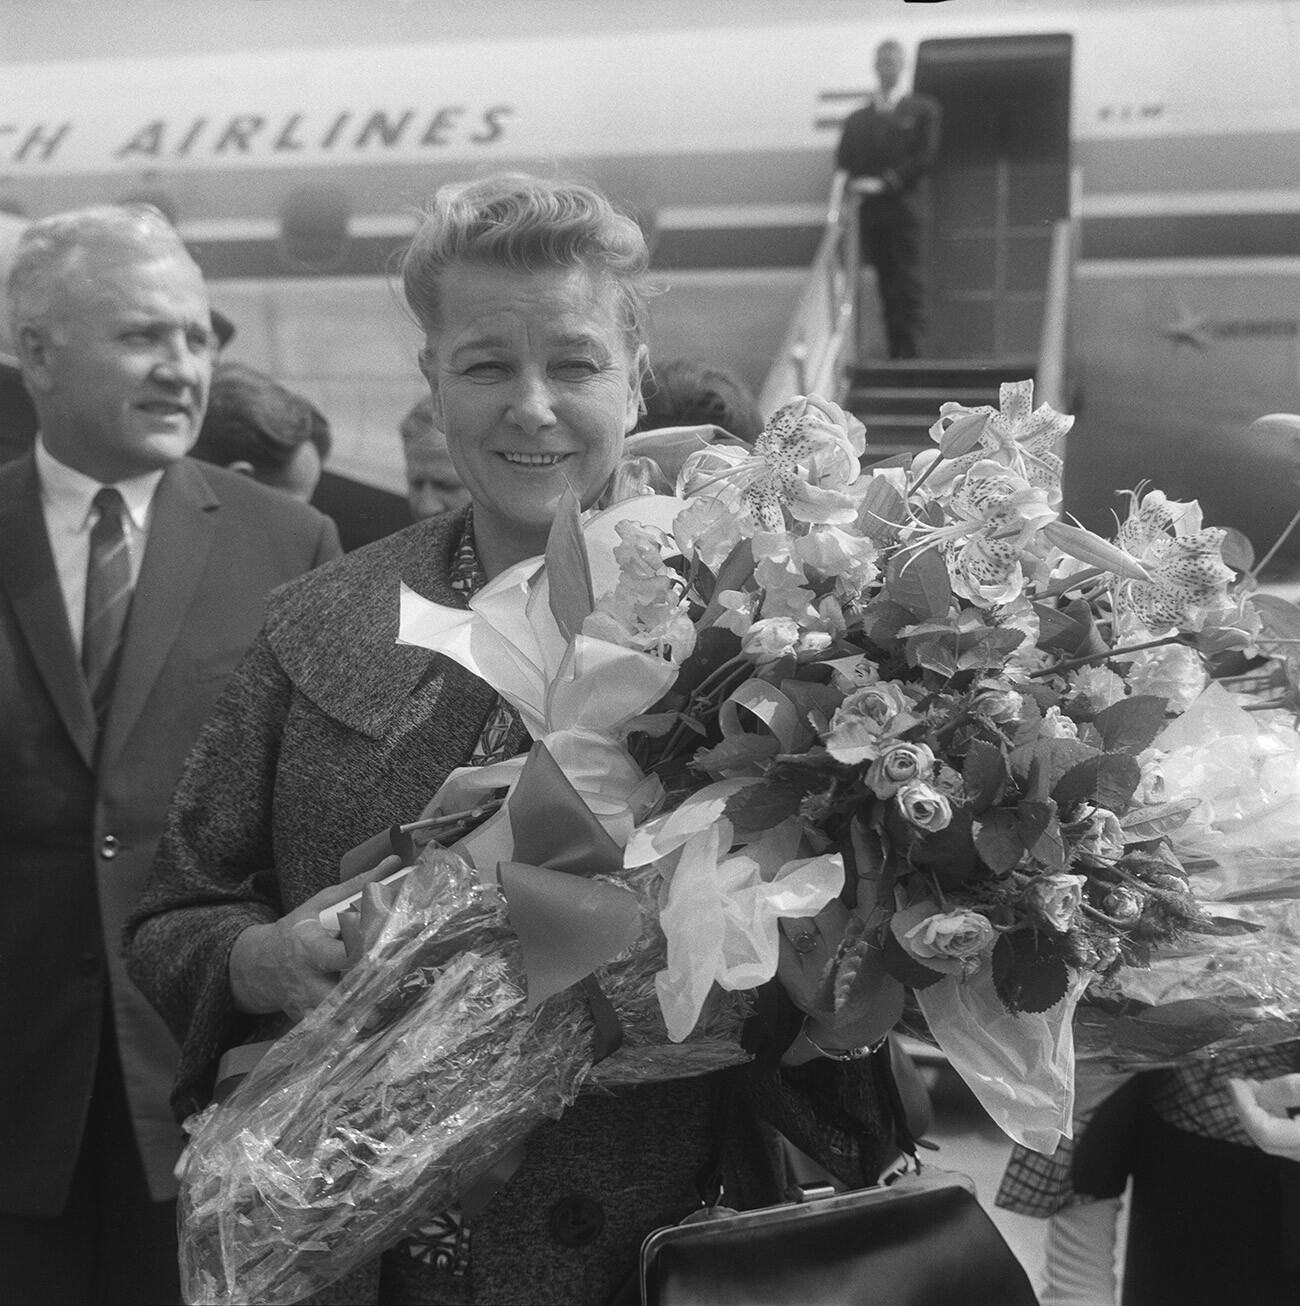 Yekaterina Furtseva llega al aeropuerto de Heathrow, Londres, Reino Unido, 1963